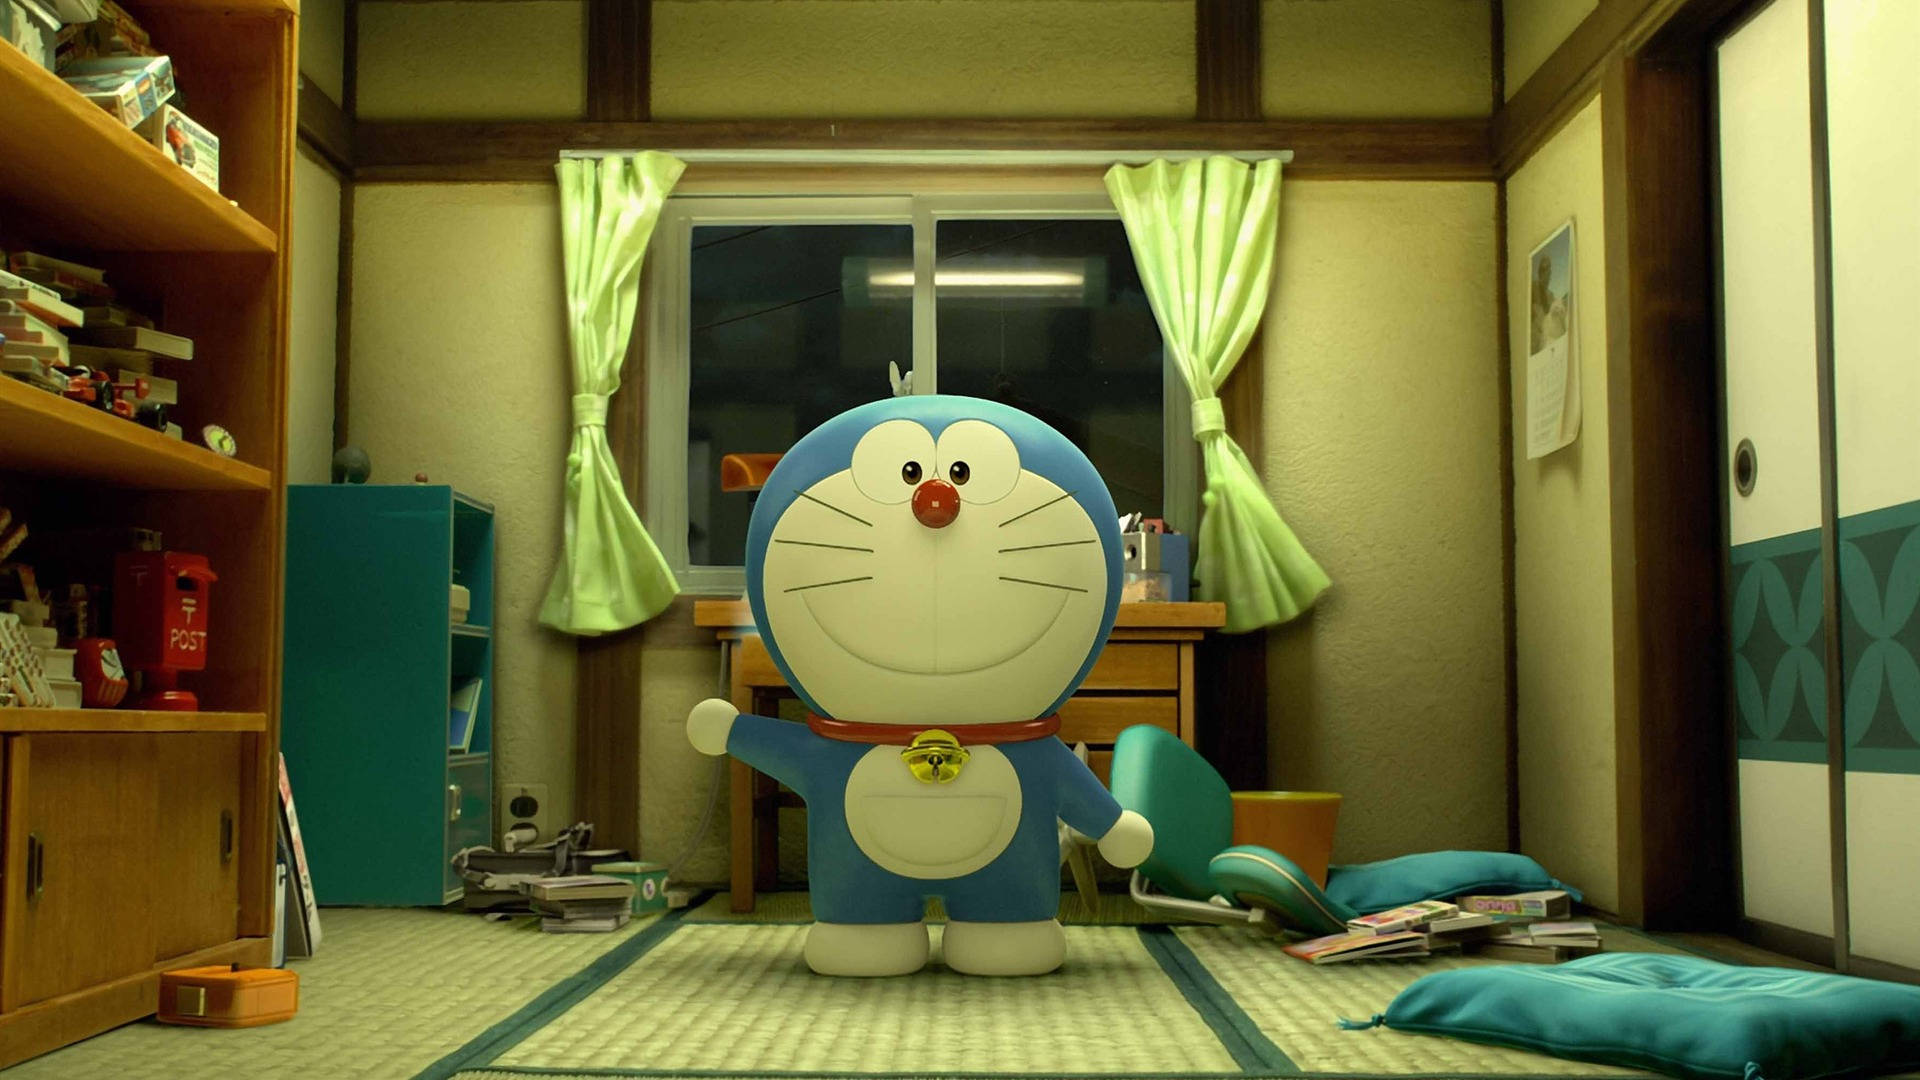 In The Bedroom Doraemon 3d Wallpaper